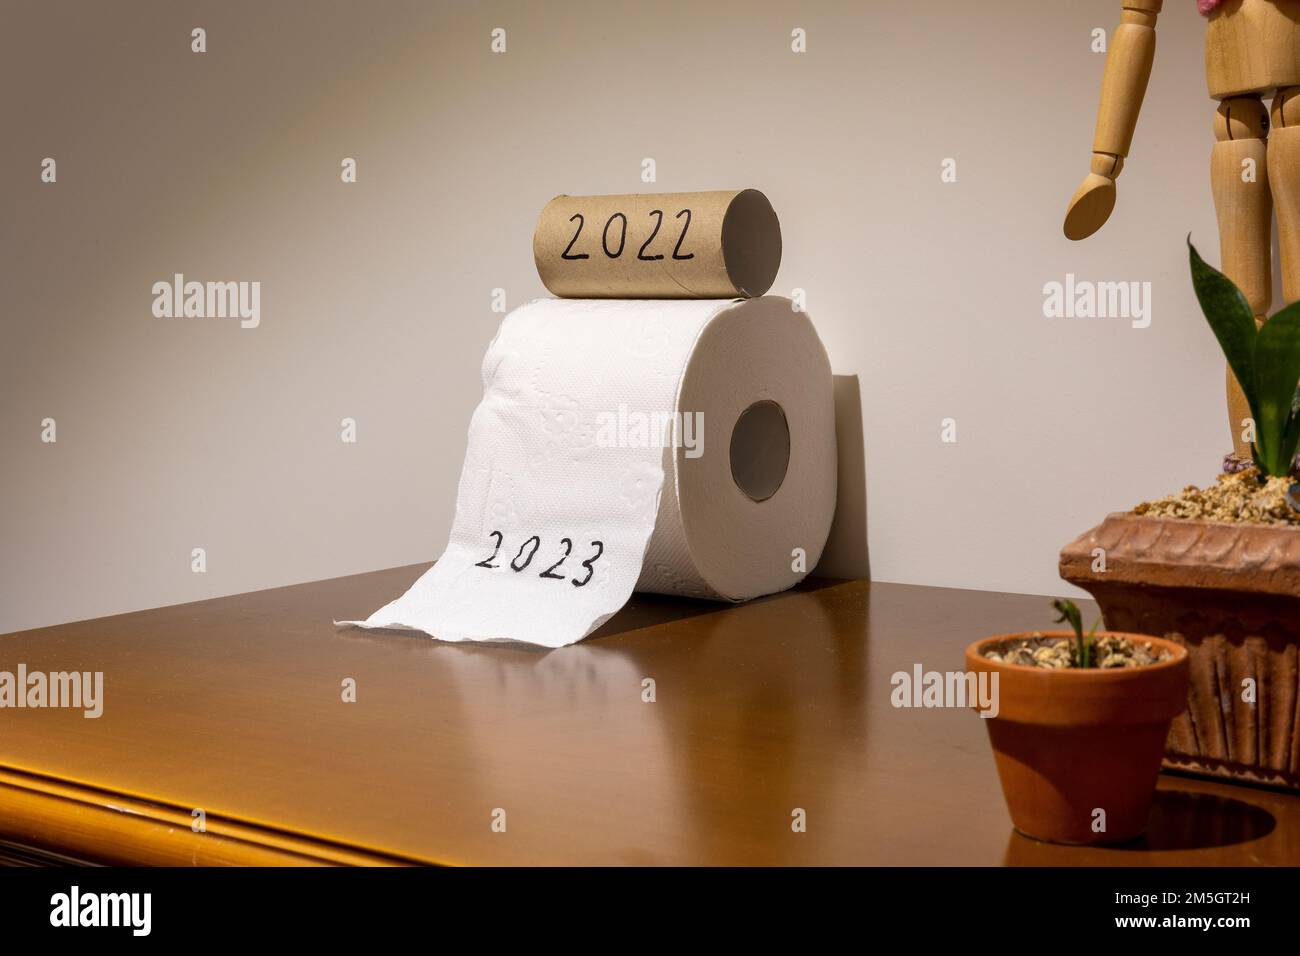 Toilettenpapiere, geschrieben als 2022 und 2023, was bedeutet, dass das alte Jahr gehen und das neue Jahr willkommen heißen Stockfoto